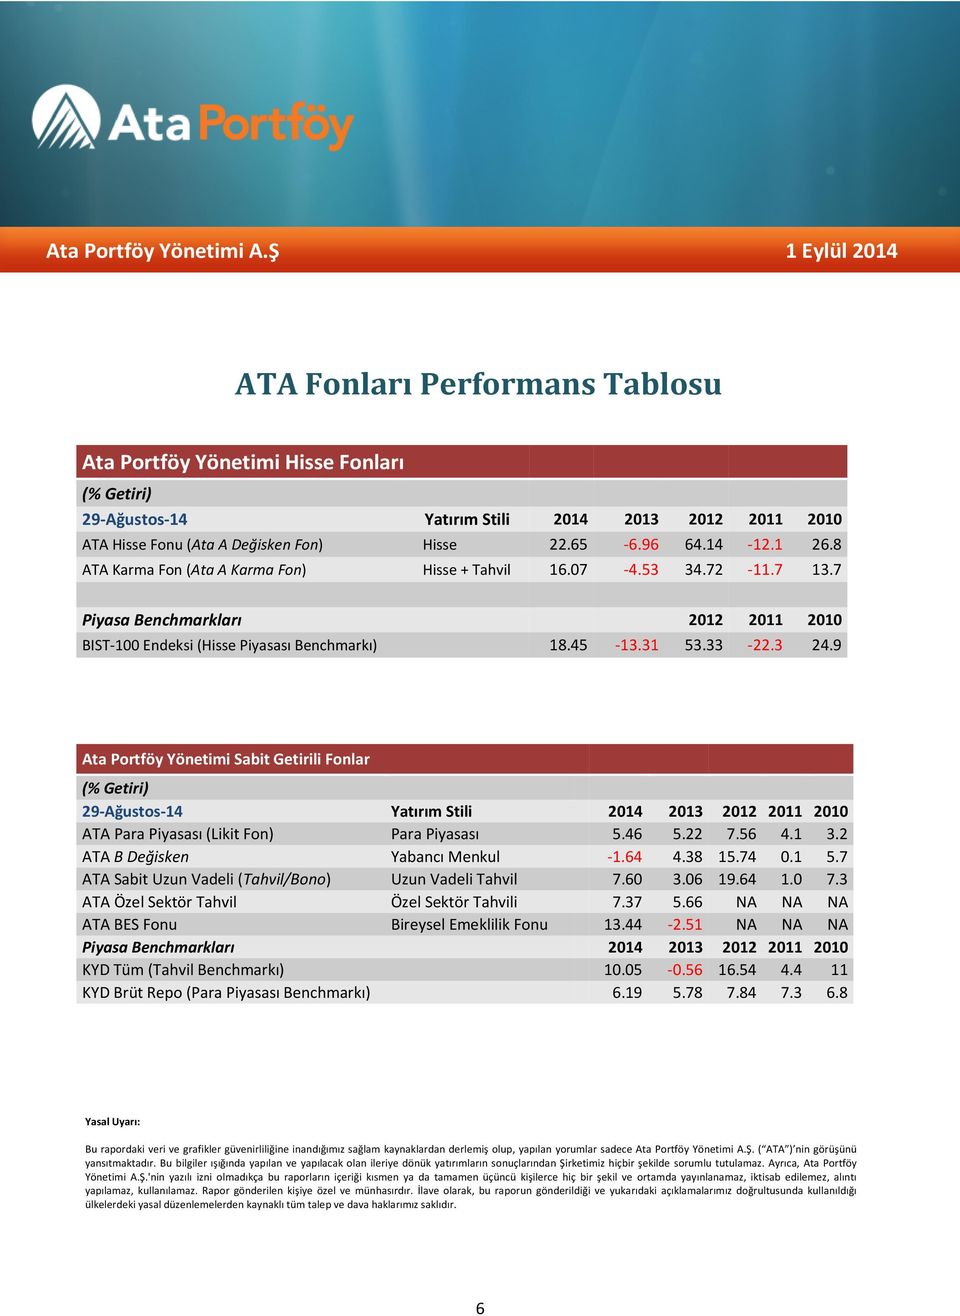 9 Ata Portföy Yönetimi Sabit Getirili Fonlar (% Getiri) 29-Ağustos-14 Yatırım Stili 2014 2013 2012 2011 2010 ATA Para Piyasası (Likit Fon) Para Piyasası 5.46 5.22 7.56 4.1 3.